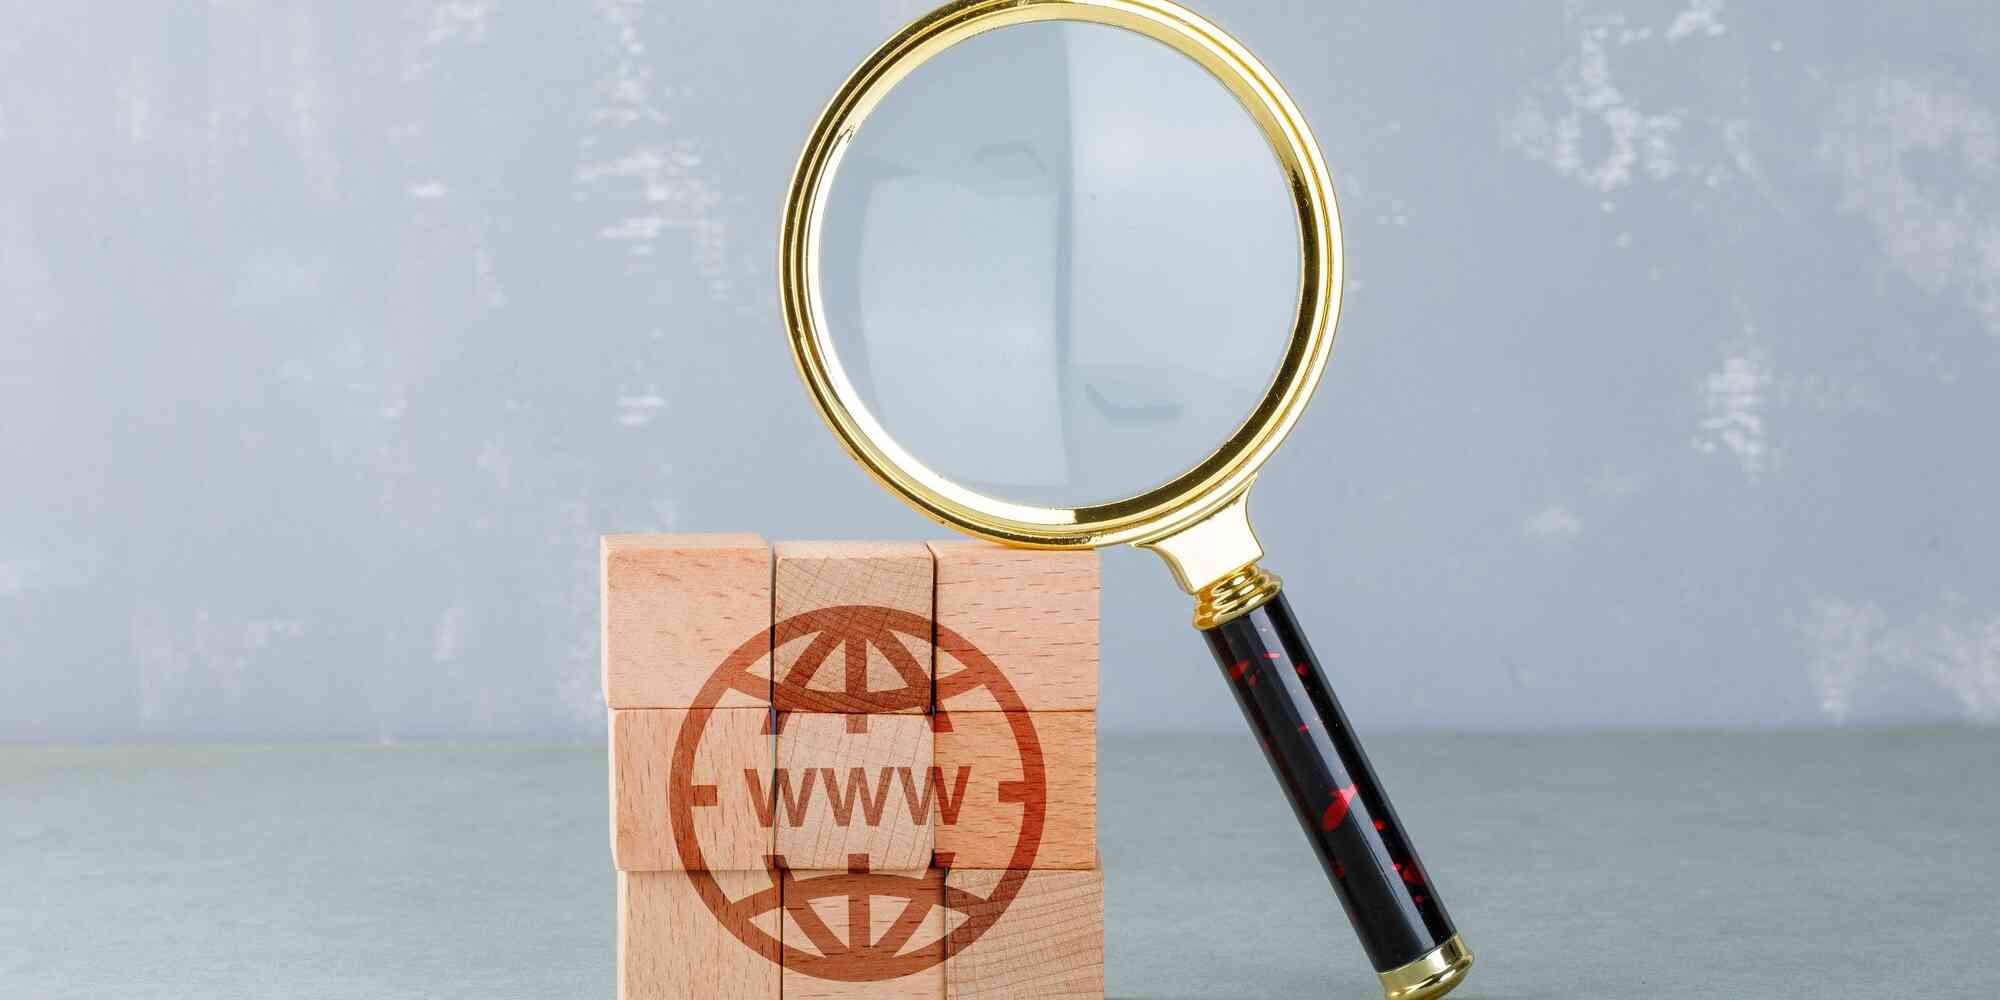 一个放大镜聚焦在一个木块上，木块上有一个通常与万维网相关的 "www "符号。这类图像通常用来表示对网域或在线内容的检查或分析，可能是在搜索引擎优化（SEO）的背景下。 搜索引擎优化中的 "域名权重 "概念是指预测网站在搜索引擎结果页面（SERP）上排名的得分。该分值基于多个因素，包括链接根域和总链接数，最终形成一个单一的域权威分值。这种可视化显示了网站在数字空间中的可信度和影响力。